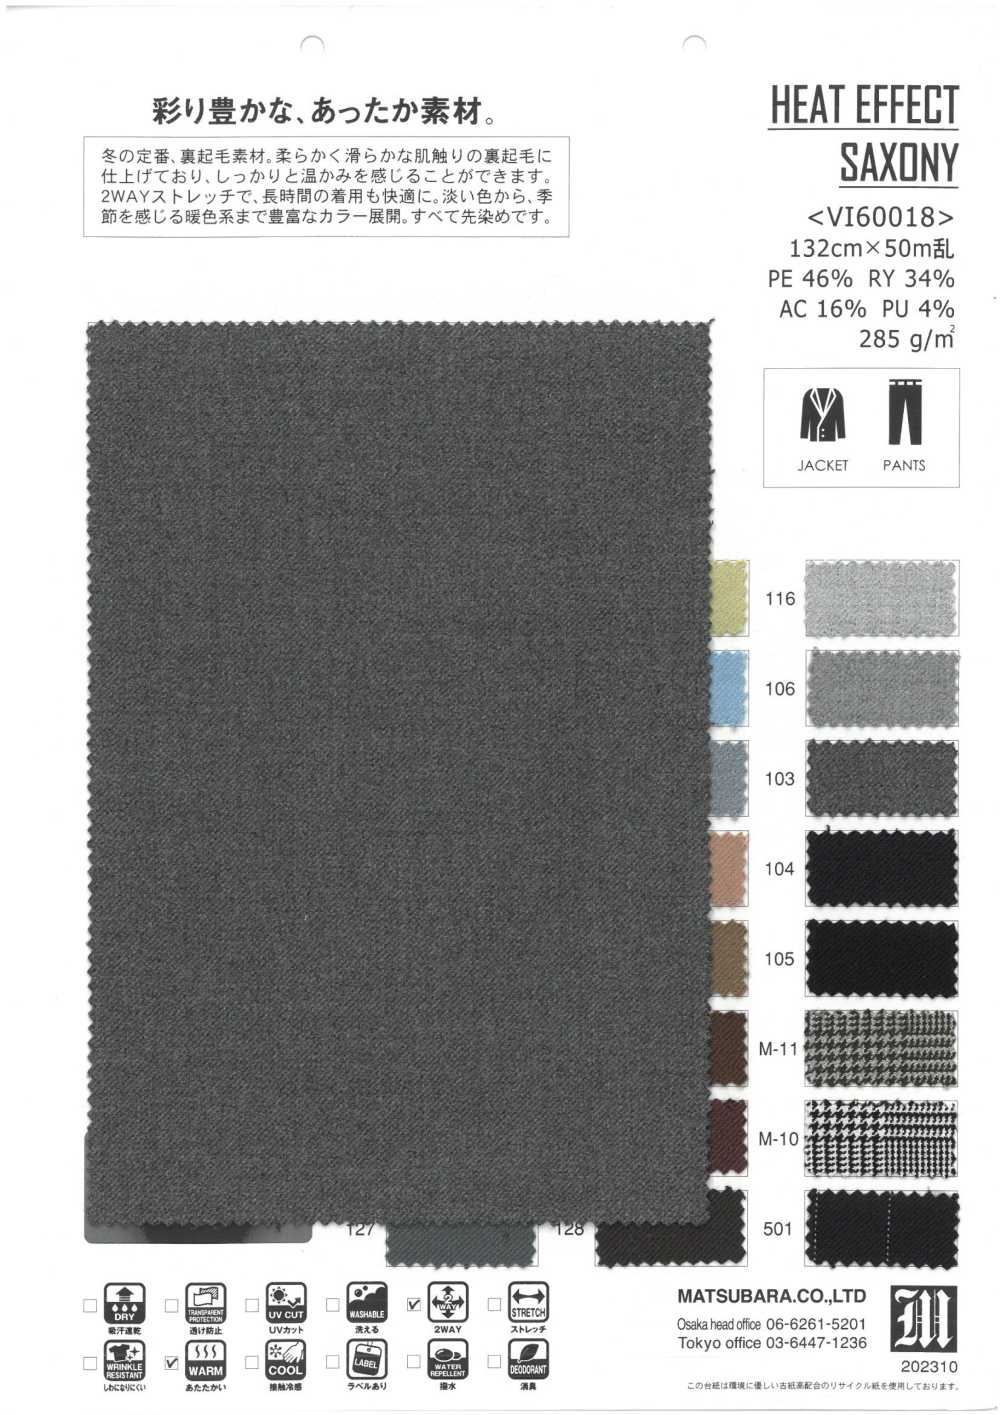 VI60018 EFFET CHALEUR SAXE[Fabrication De Textile] Matsubara